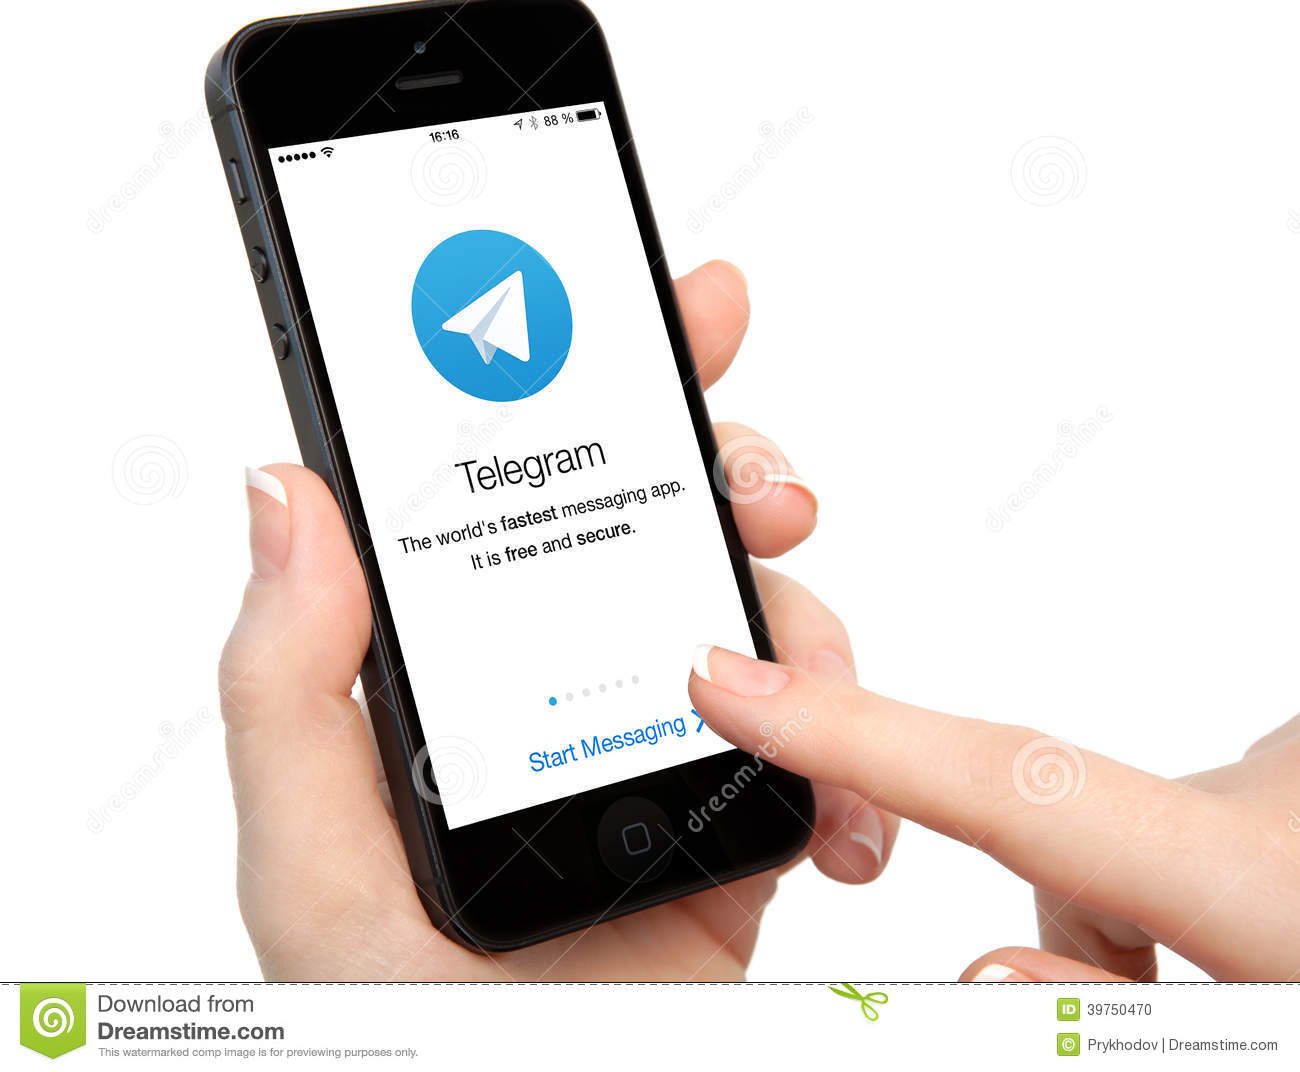 Aggiornamento Telegram 4.3 anche per gli utenti iPhone